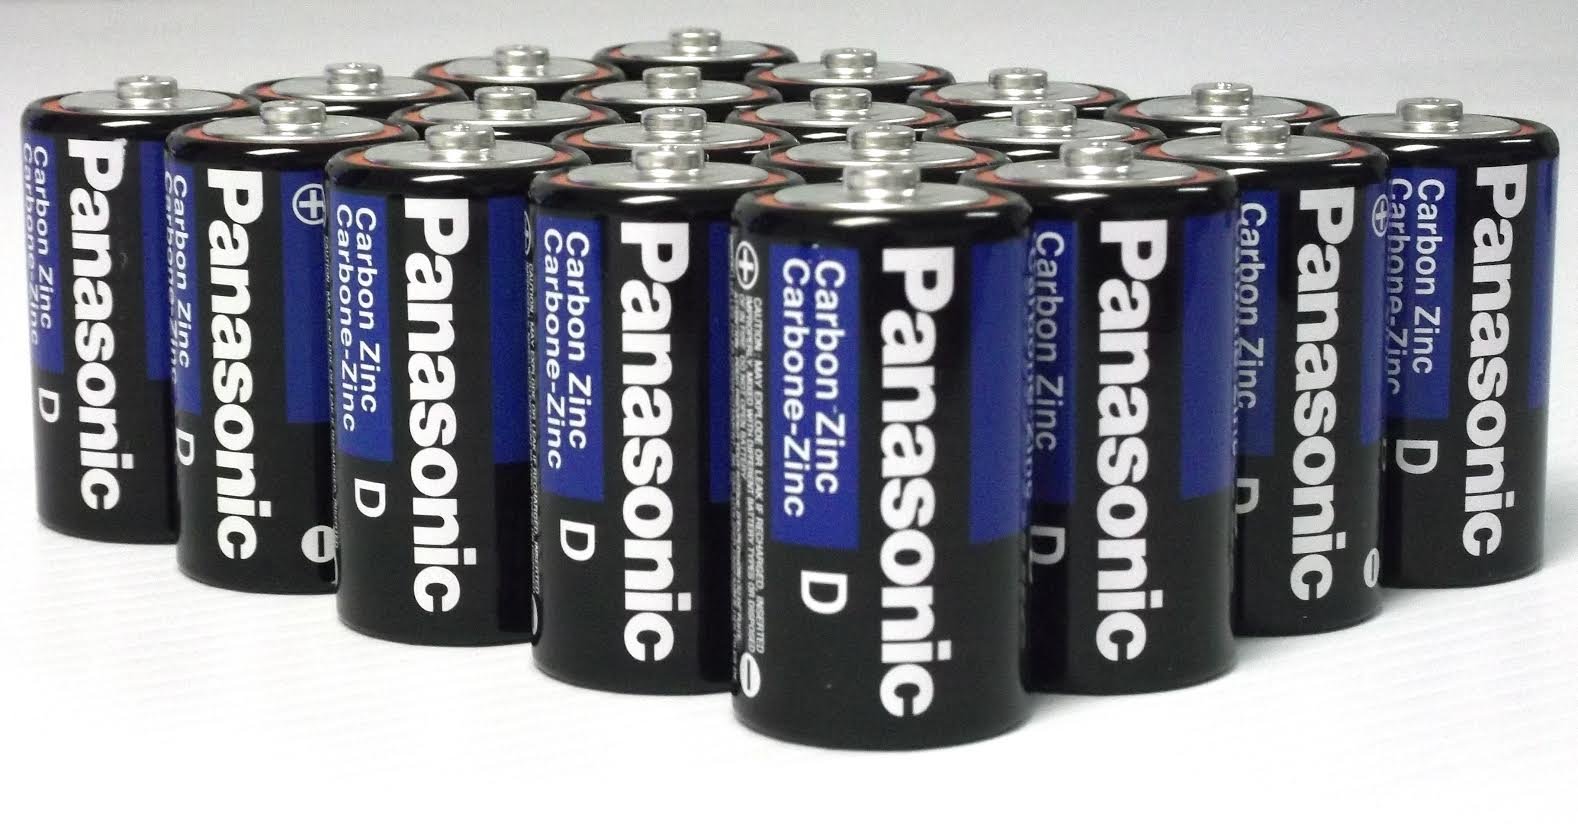 48 Pack Wholesale Lot Panasonic Super Heavy Duty D Batteries